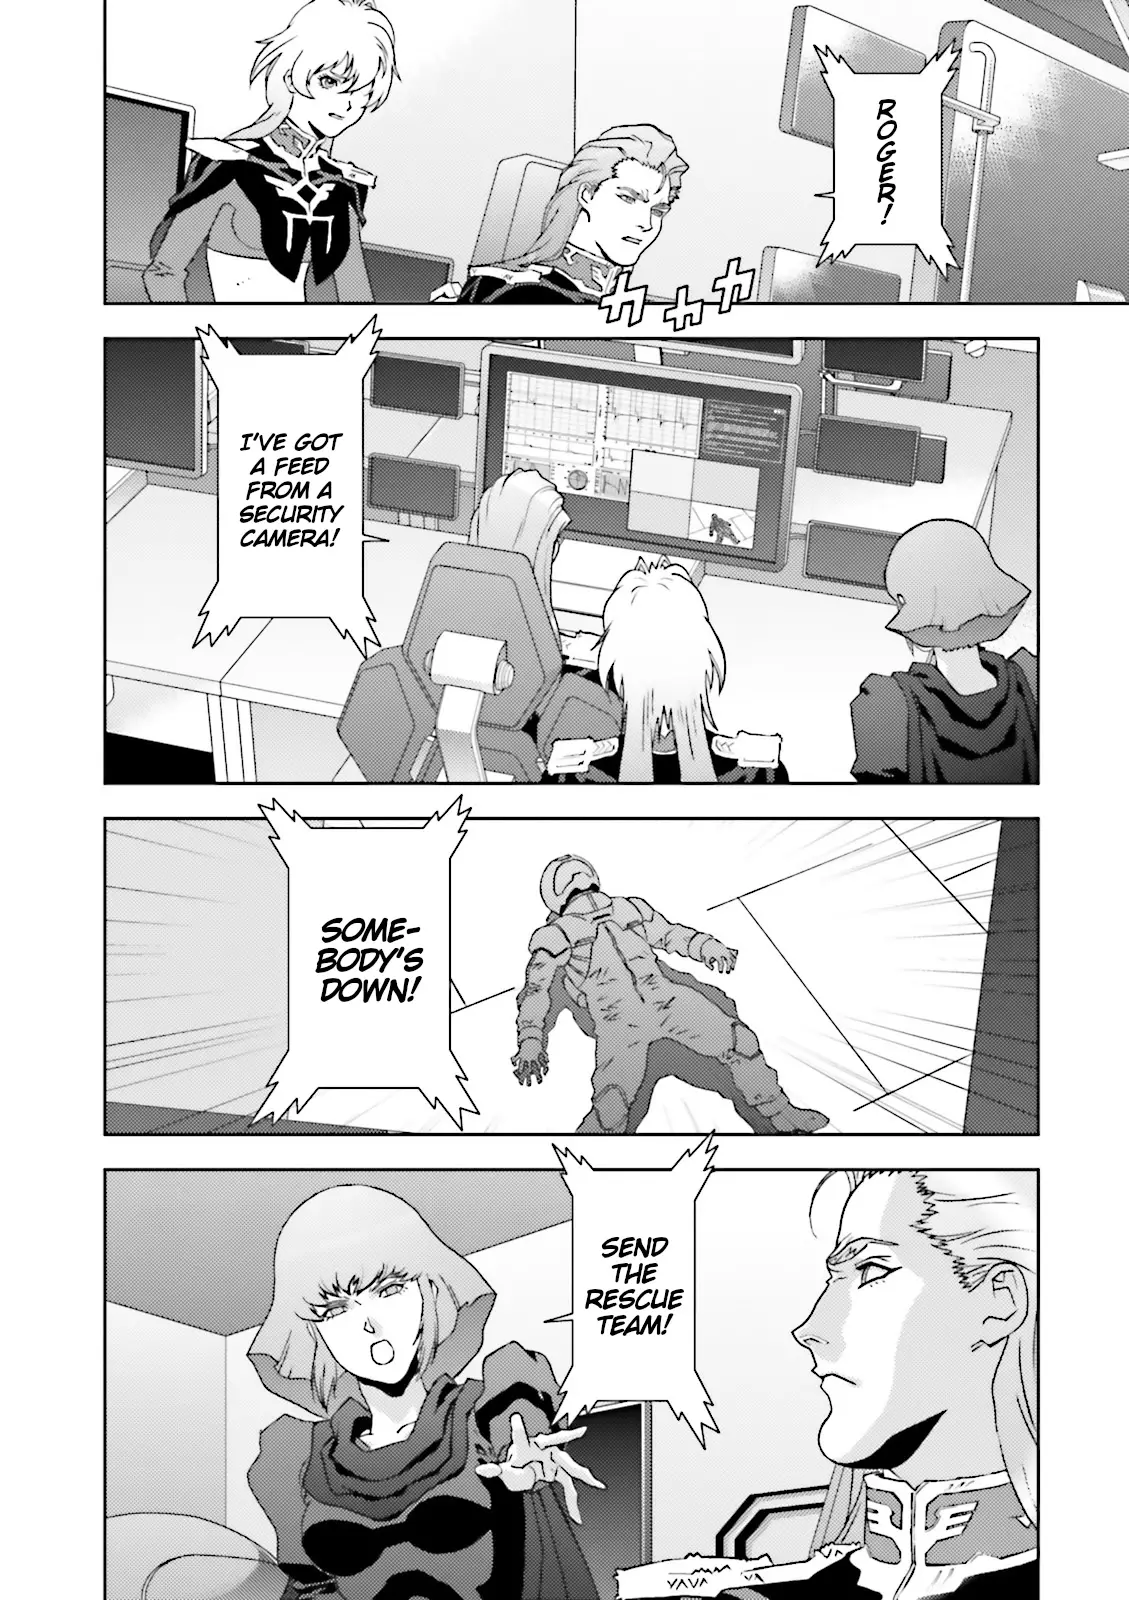 Mobile Suit Zeta Gundam - Define - 46 page 44-e6fc4d7f